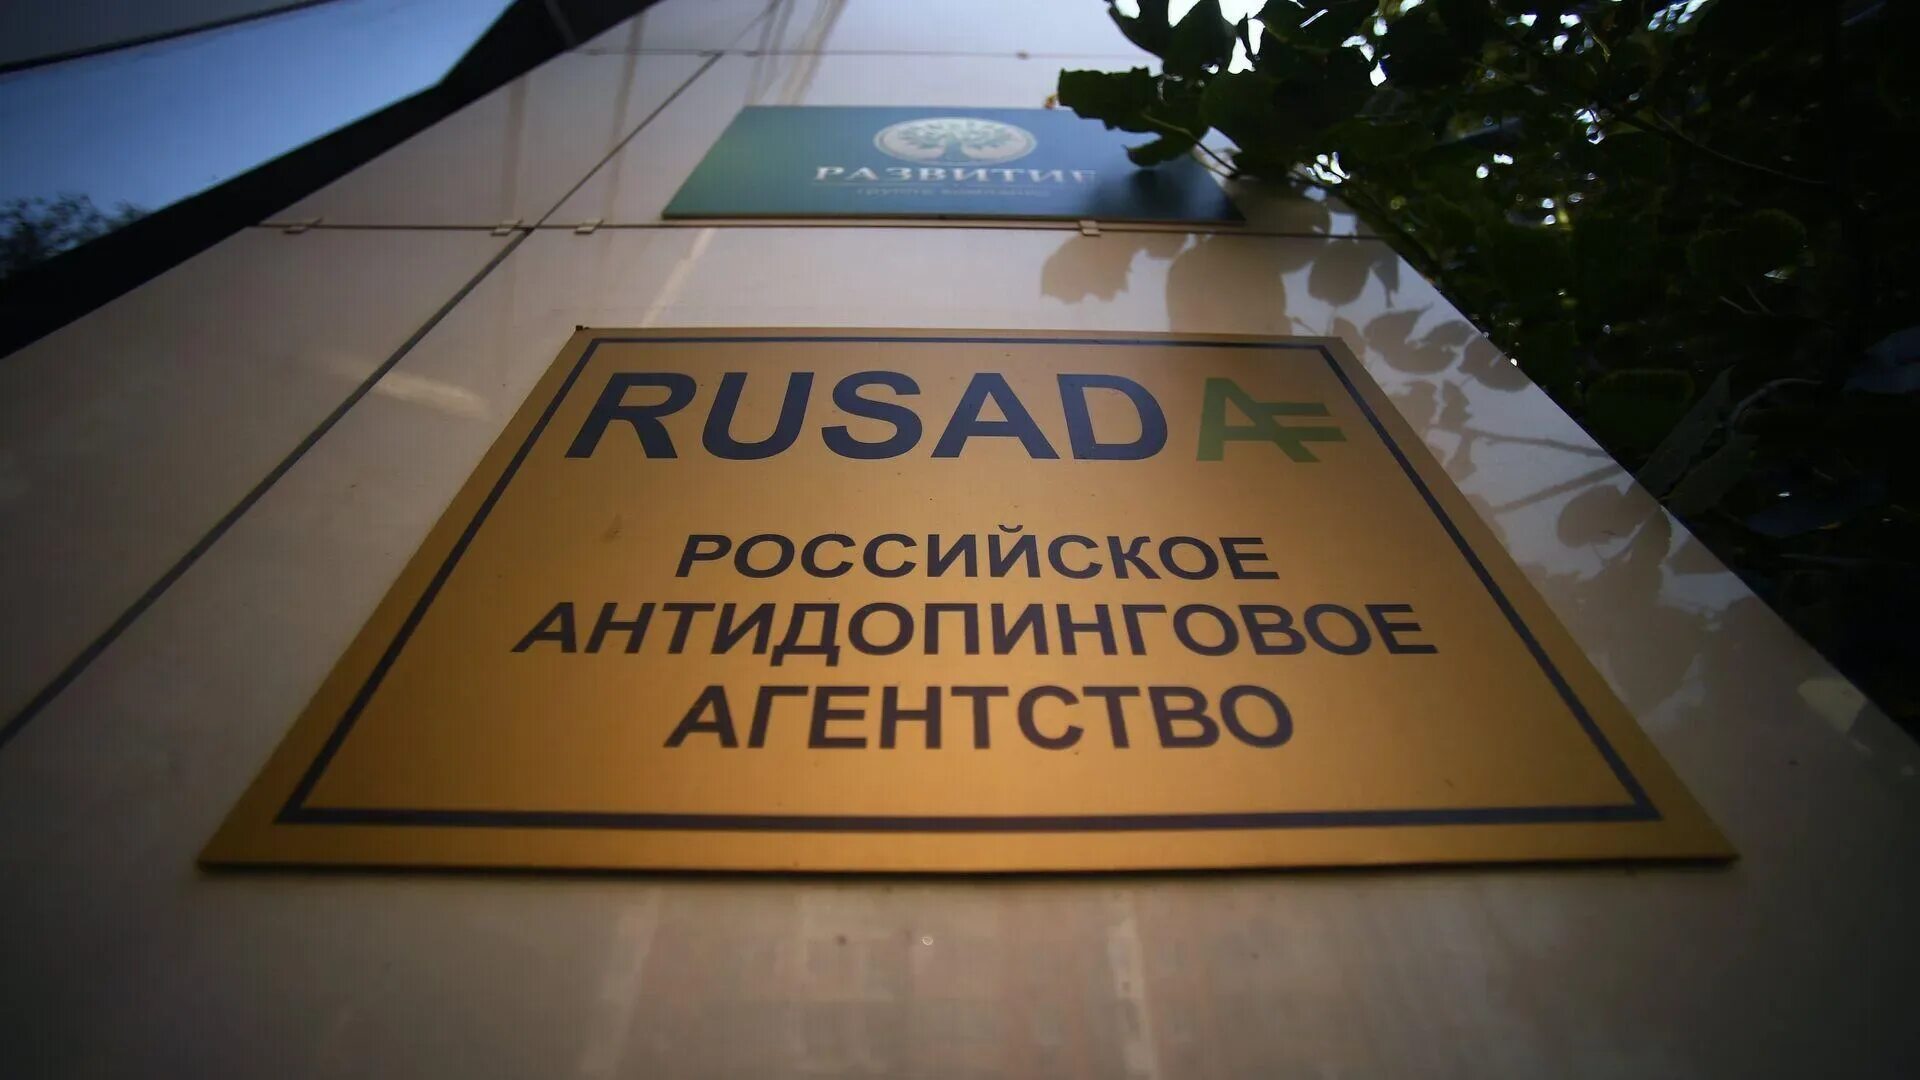 Рос ада. РУСАДА. Антидопинговое агентство. Российское антидопинговое агентство РУСАДА это. РУСАДА логотип.